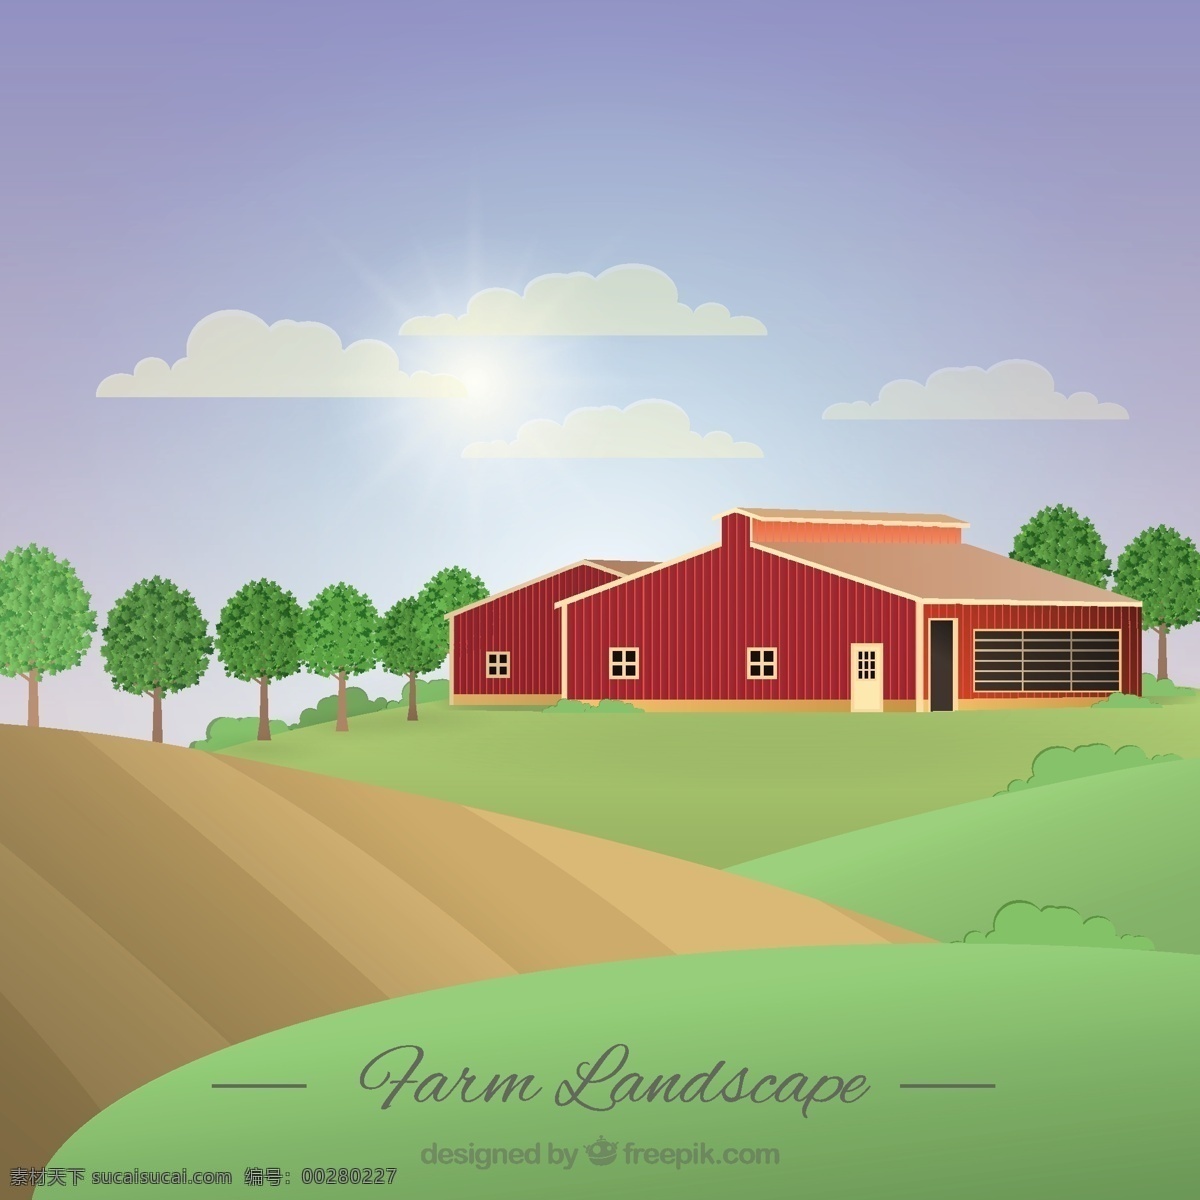 阳光 灿烂 天 里 一座 谷仓 农场 景观 房子 自然 蔬菜 生态 有机 环境 发展 土地 一天 生态友好 农业 农村 草地 农场的房子 绿色